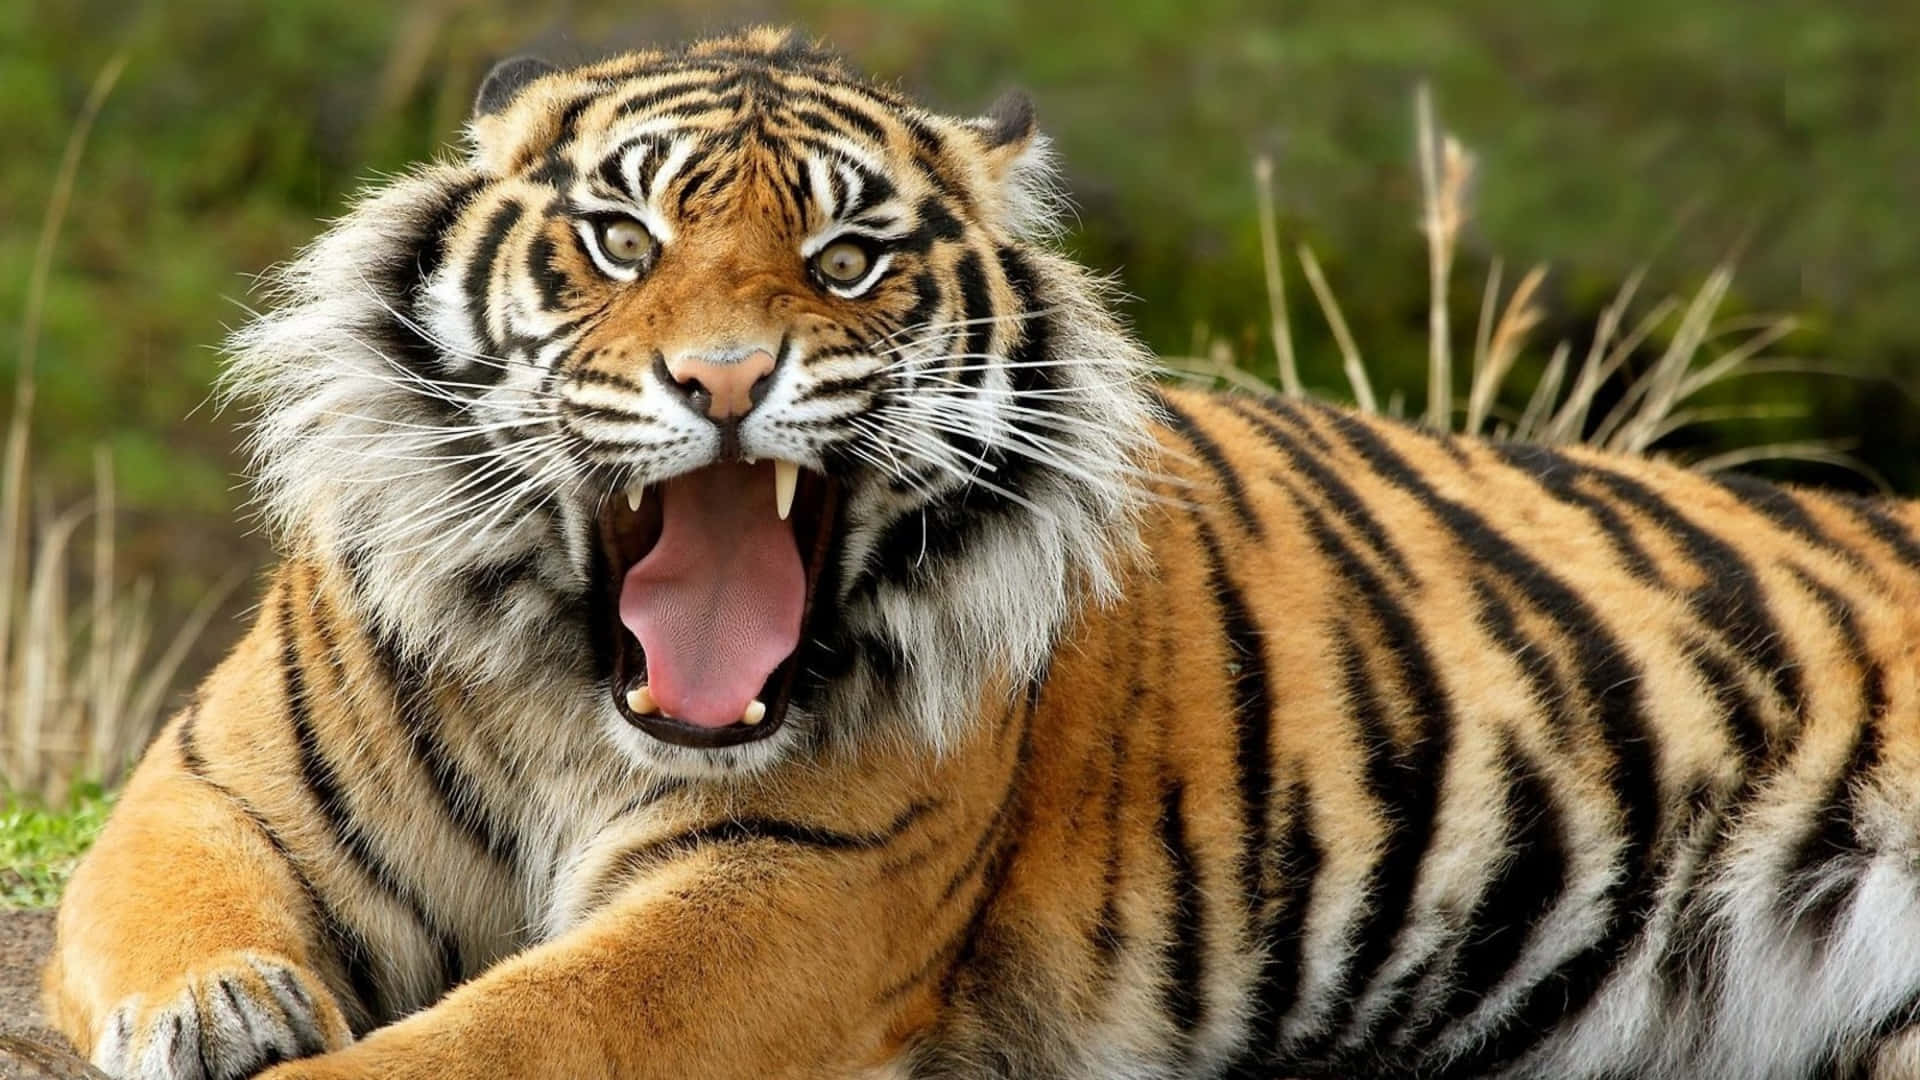 Tigerface Bilder